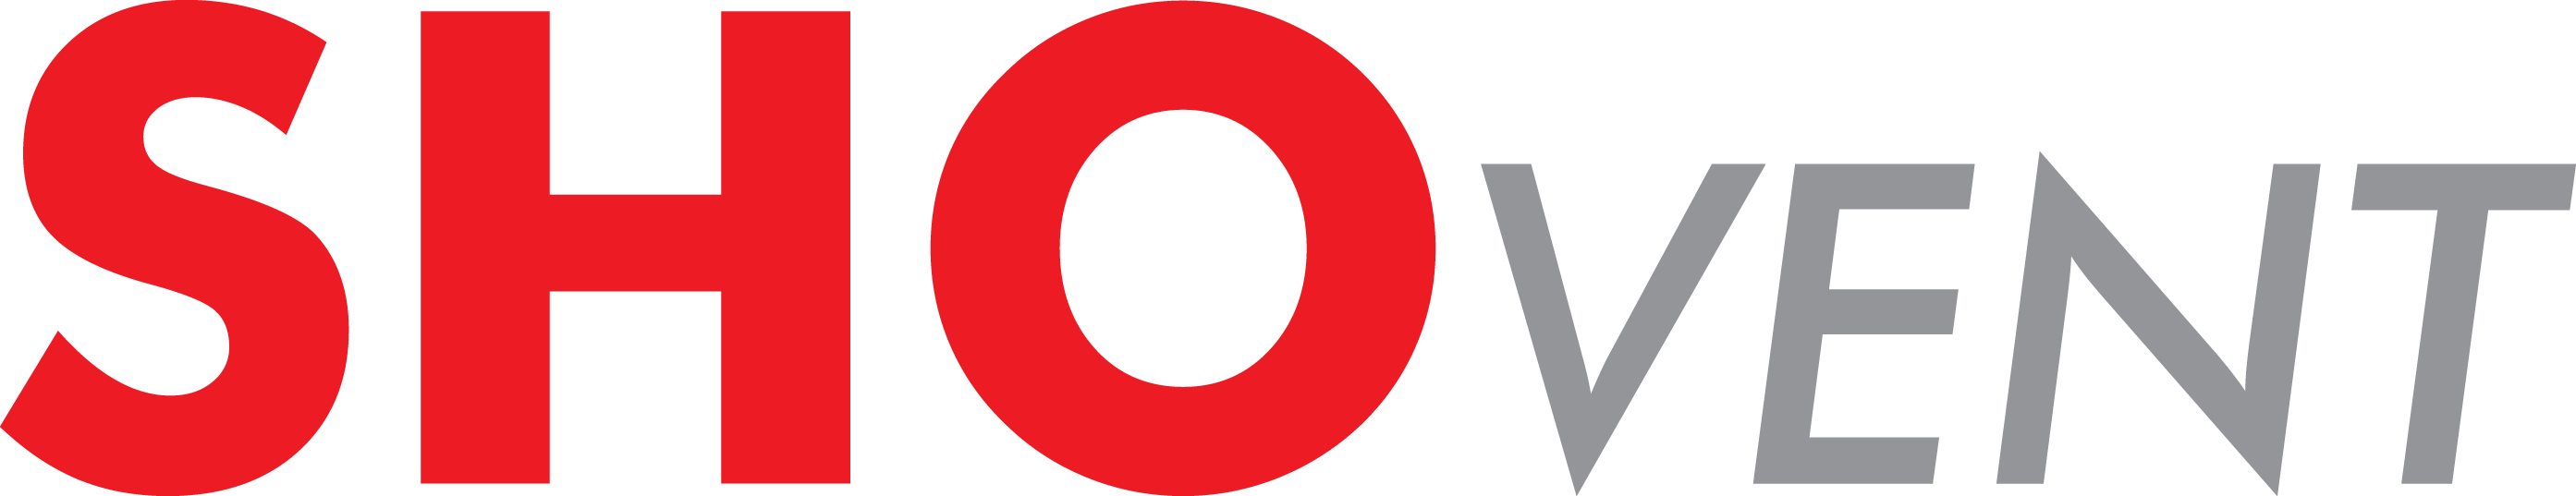 shovent-logo-1